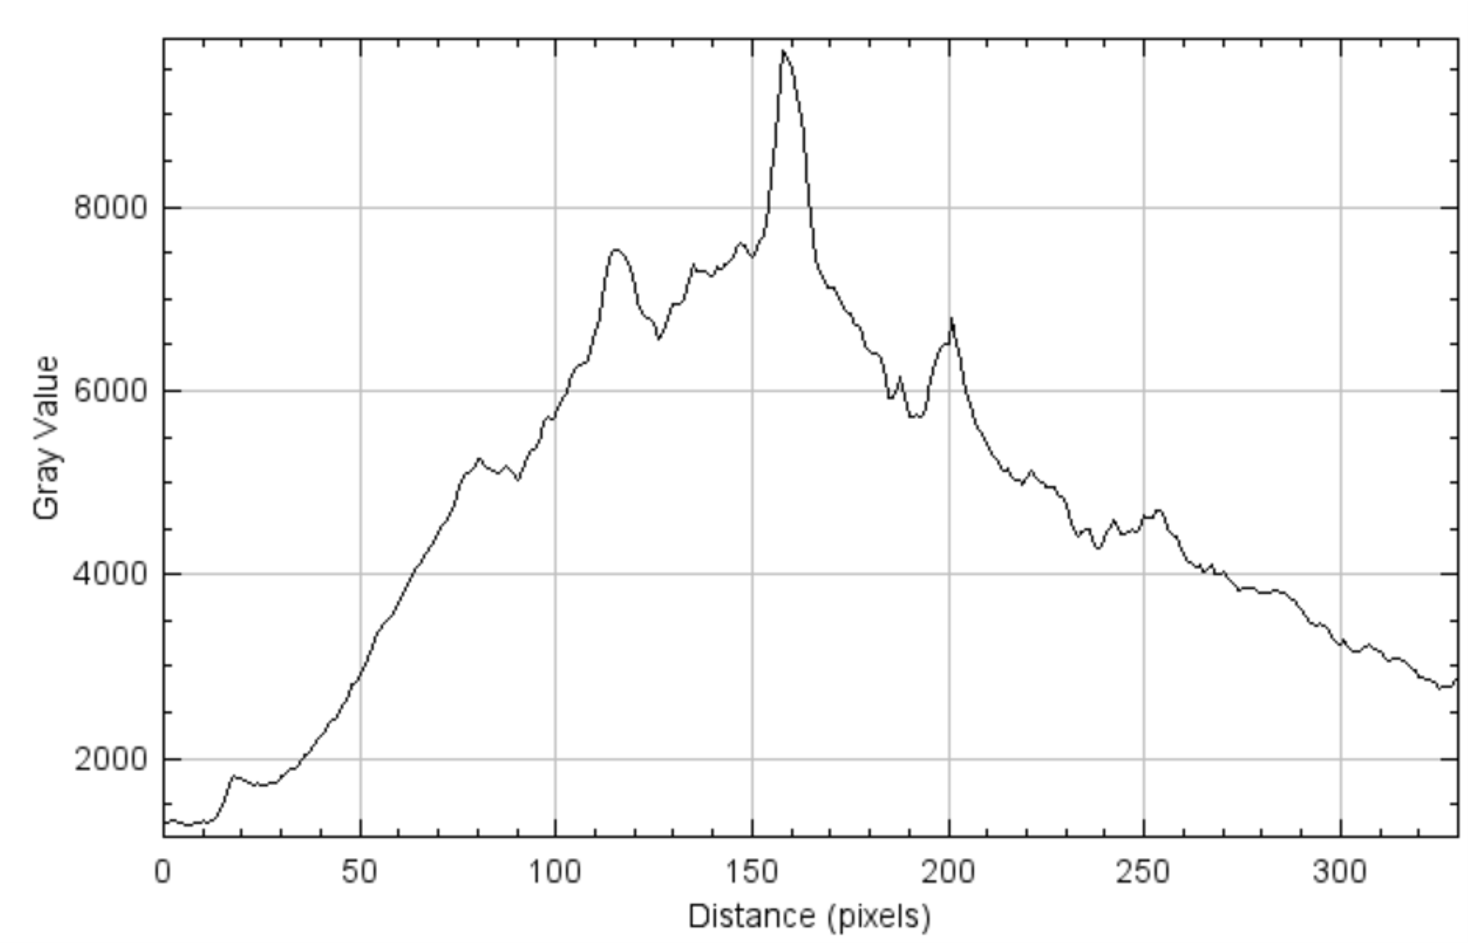 在冕区选取的某Y轴以及对应采样半径进行数据平均后得到的曲线